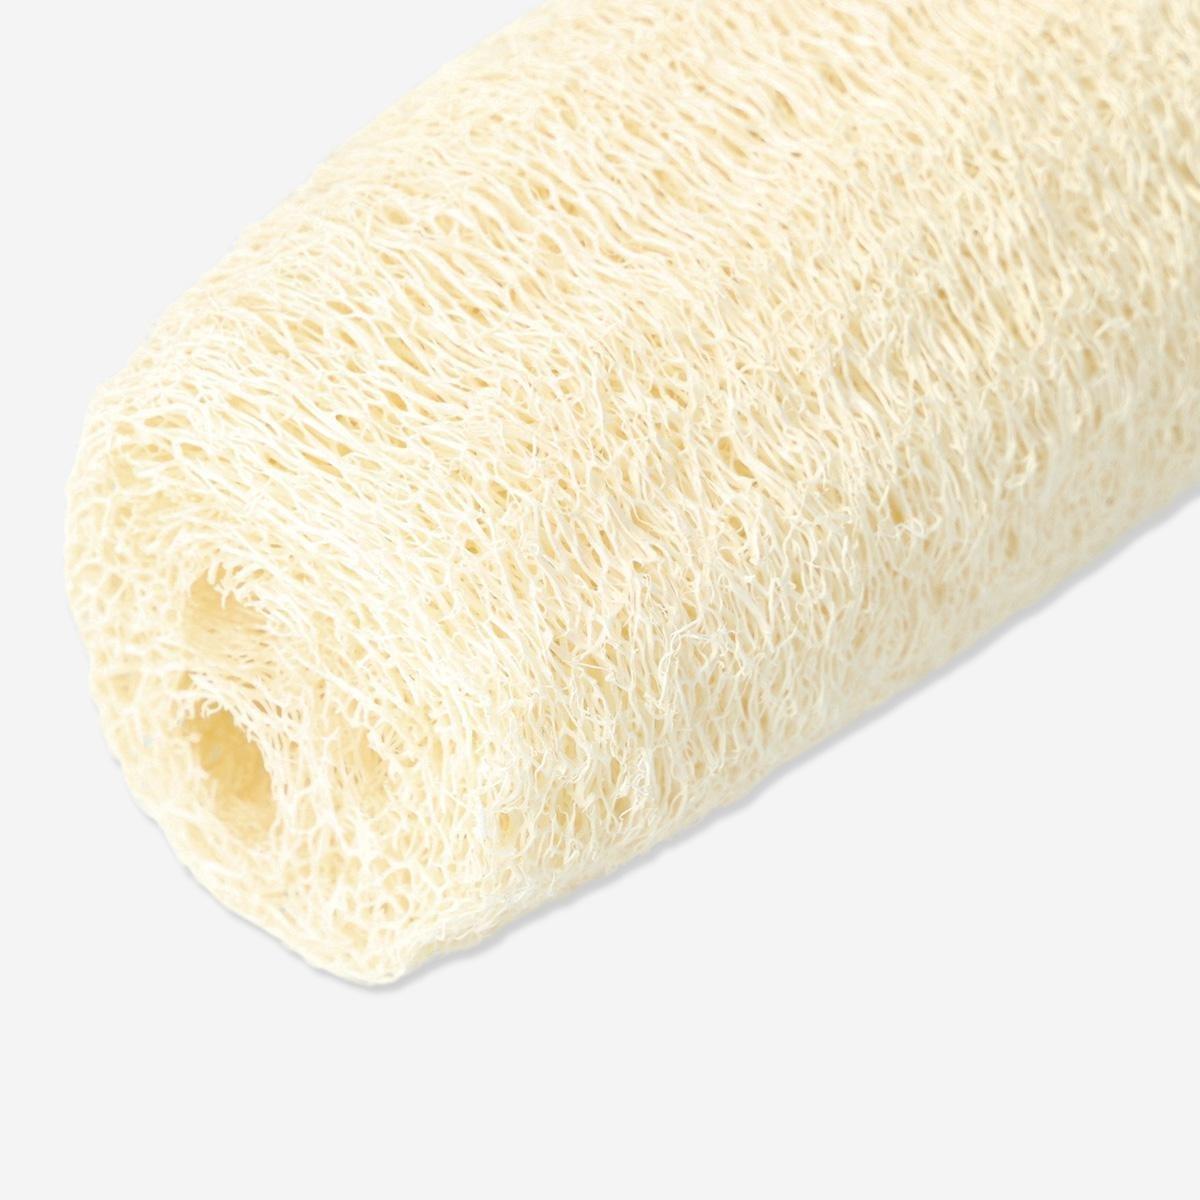 Cream natural sponge